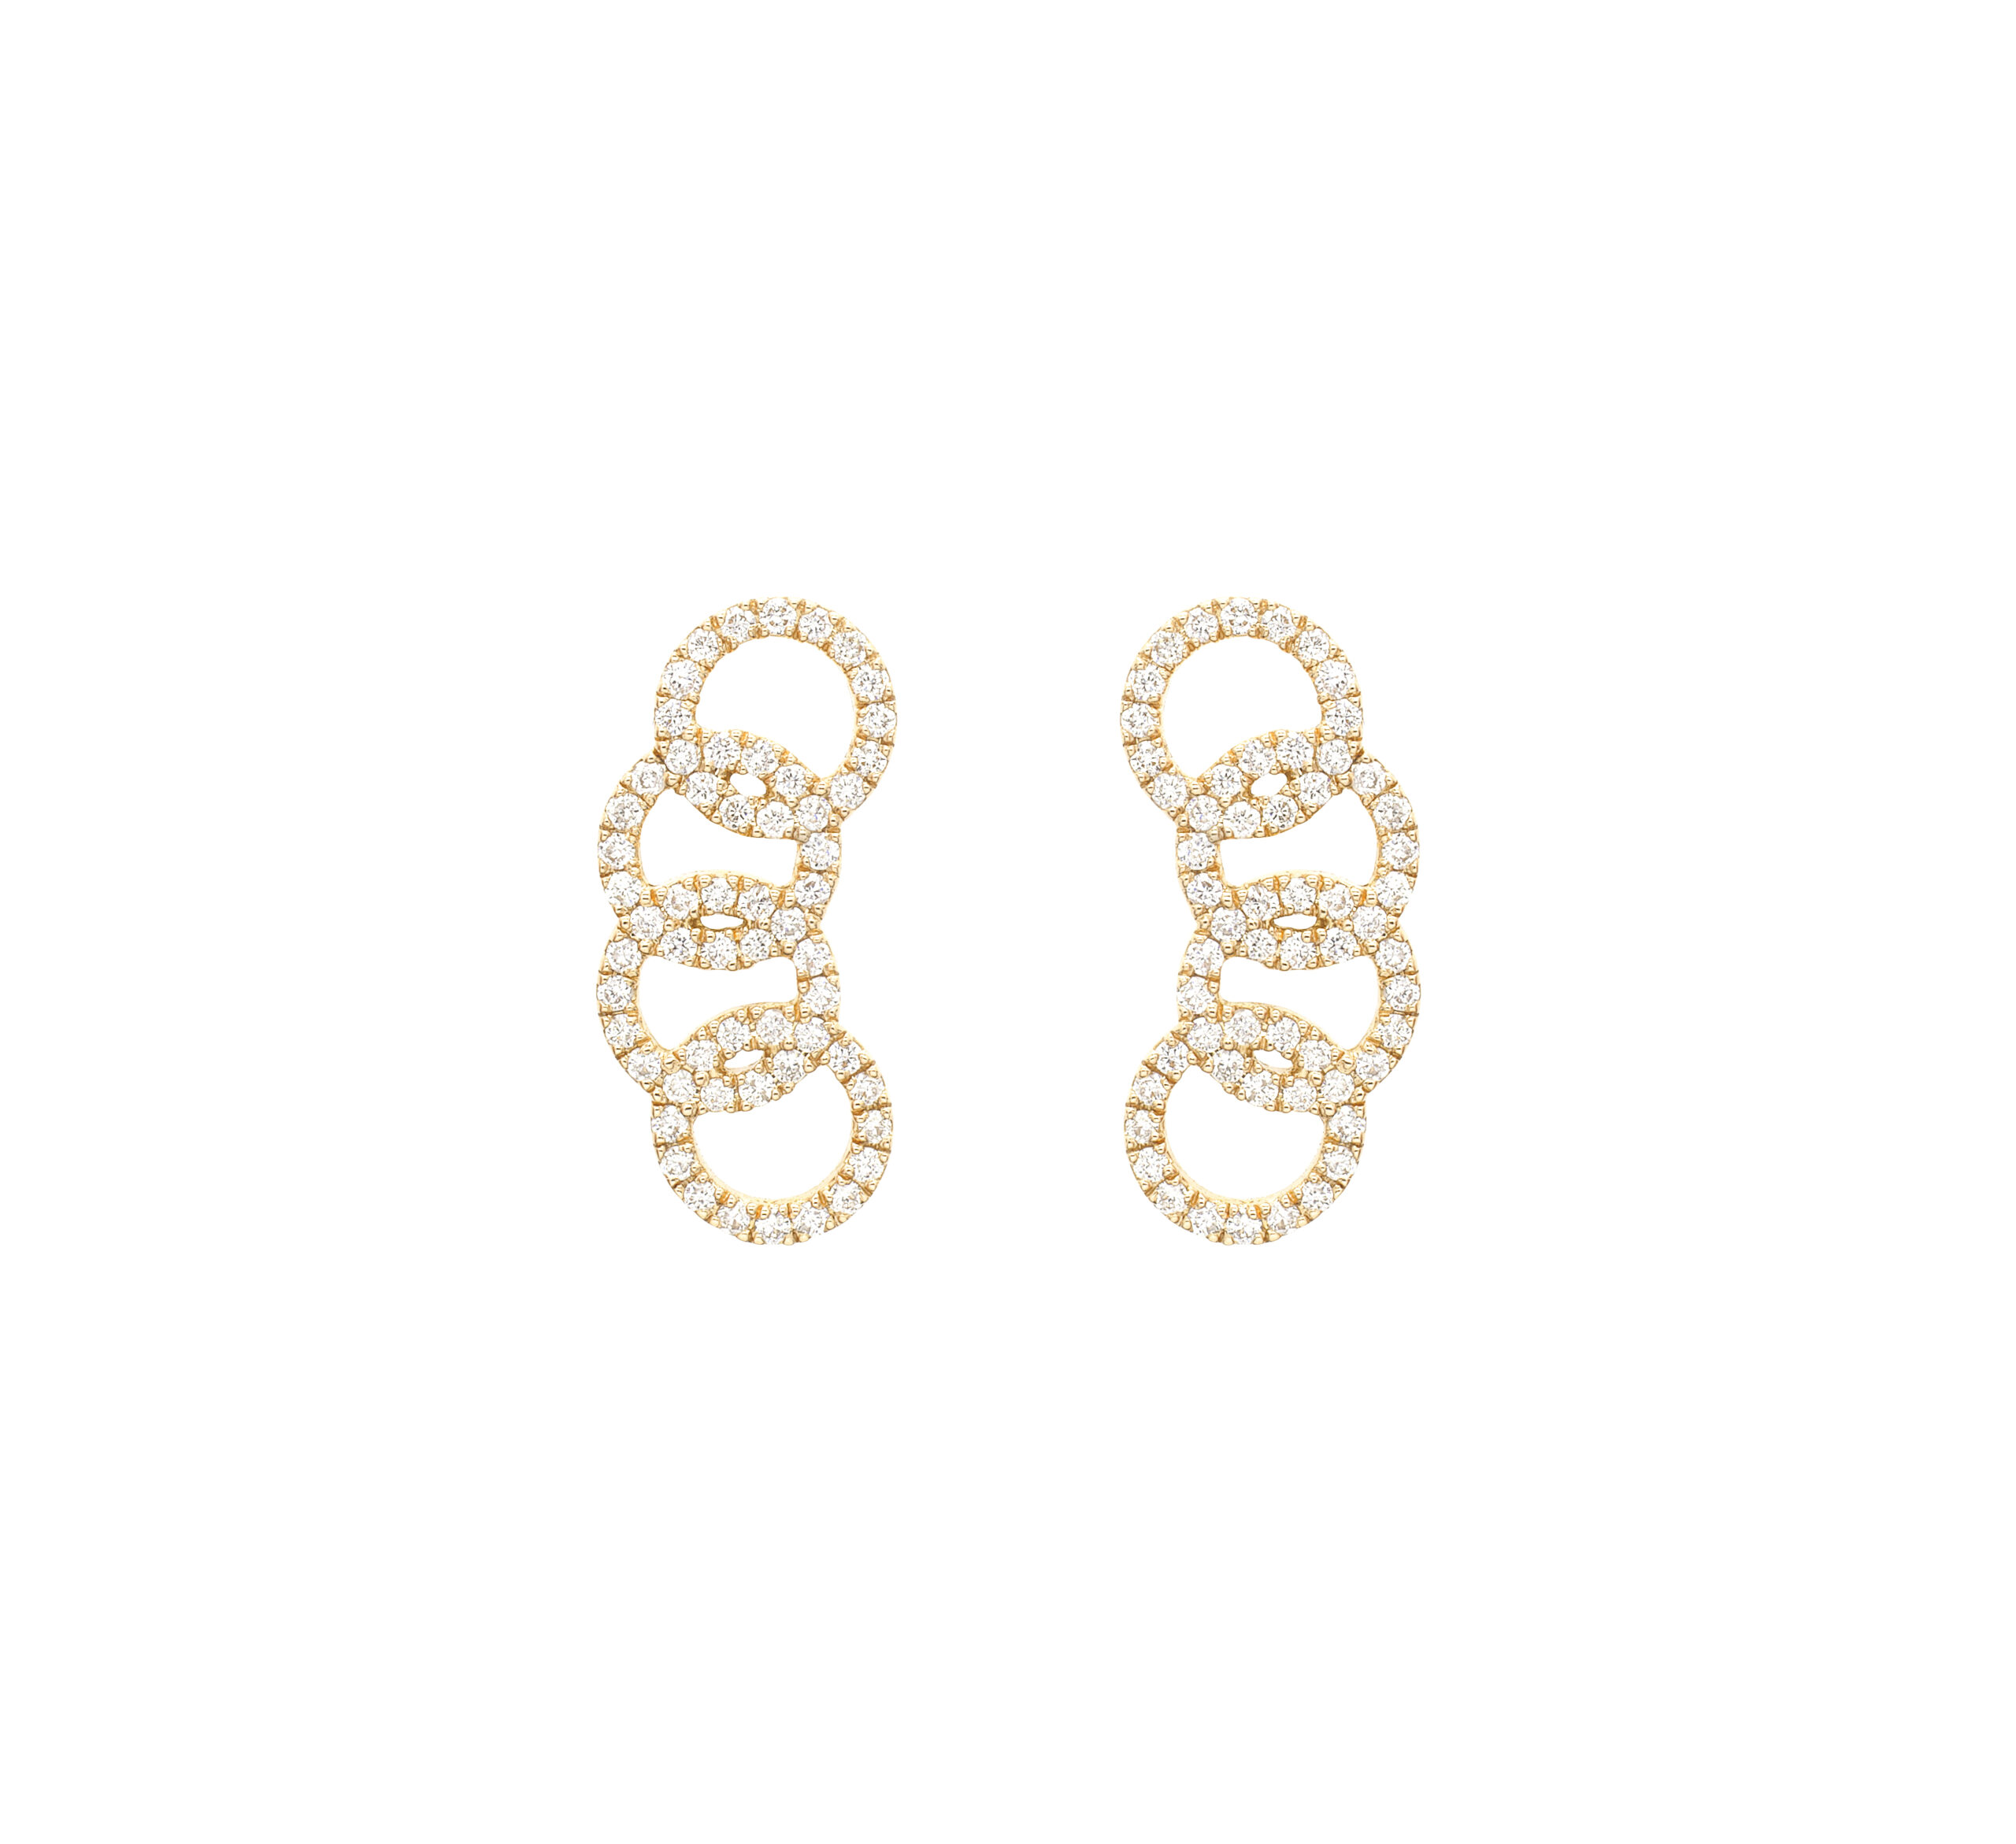 Boucles d'oreilles montantes en or jaune et diamants made in France, bijoux cadeaux tendances rock pour femmes.